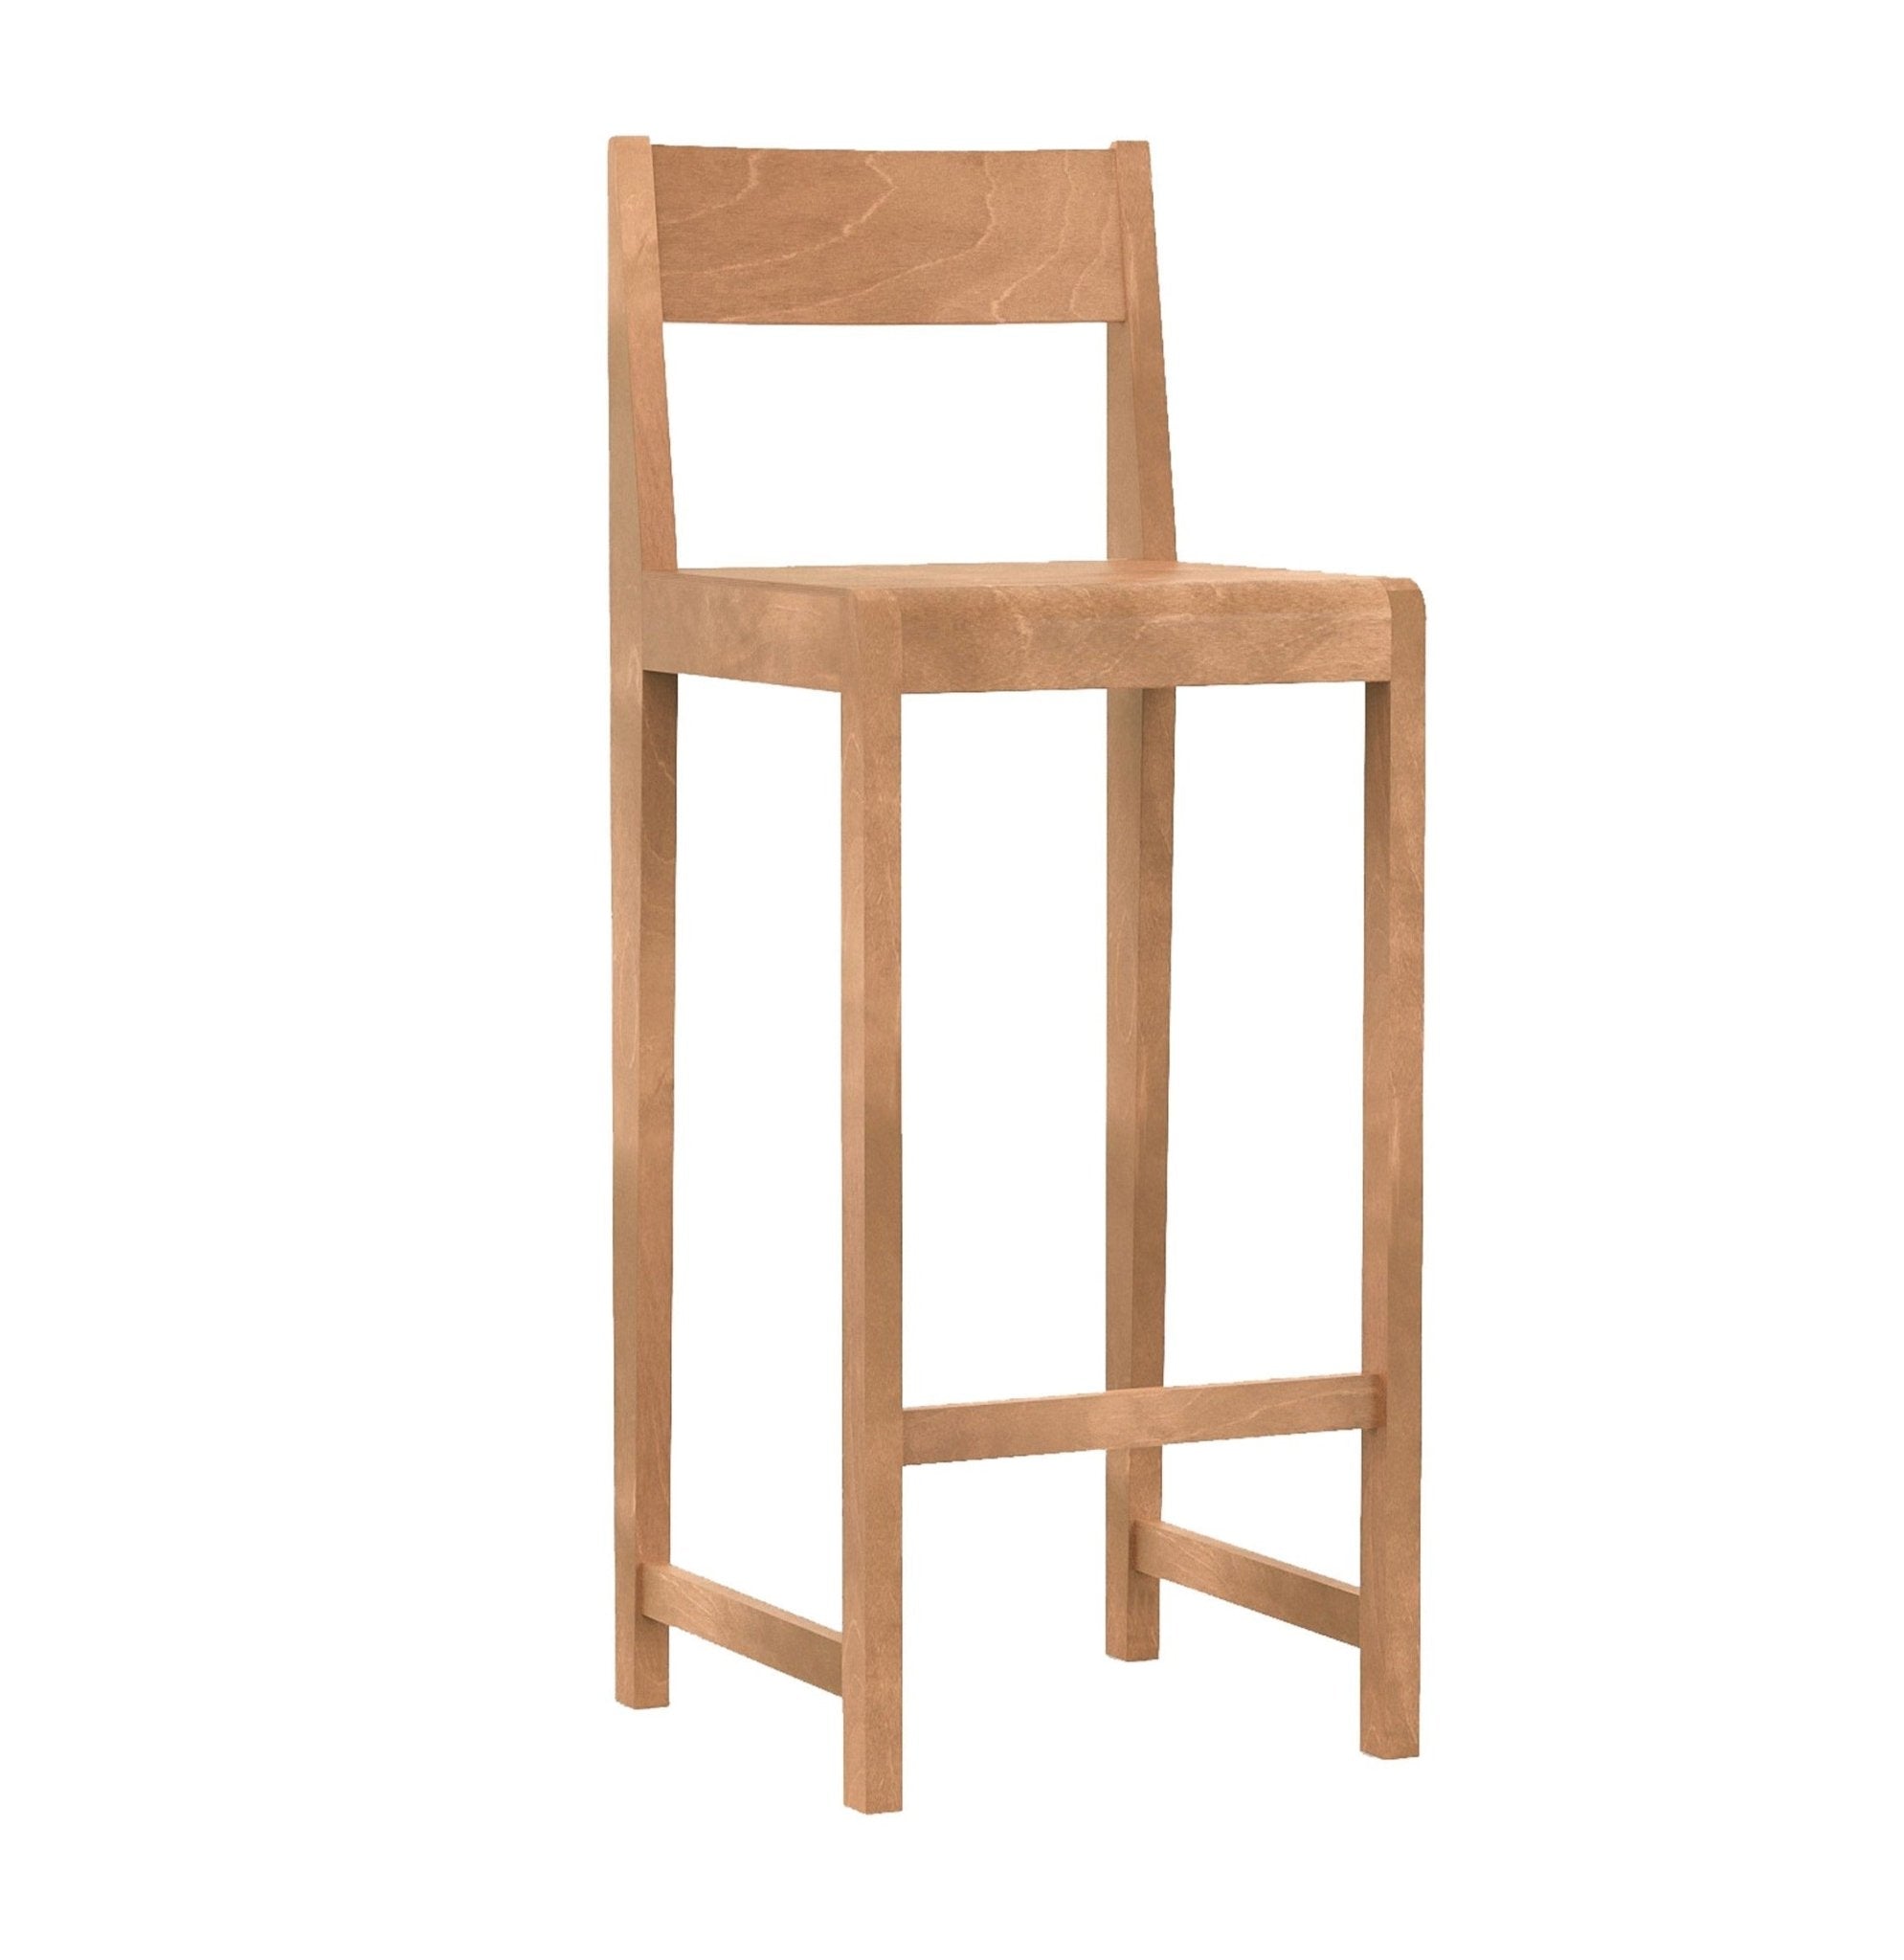 Bar Chair 01 - Tall- 29.9" / Warm Brown Wood